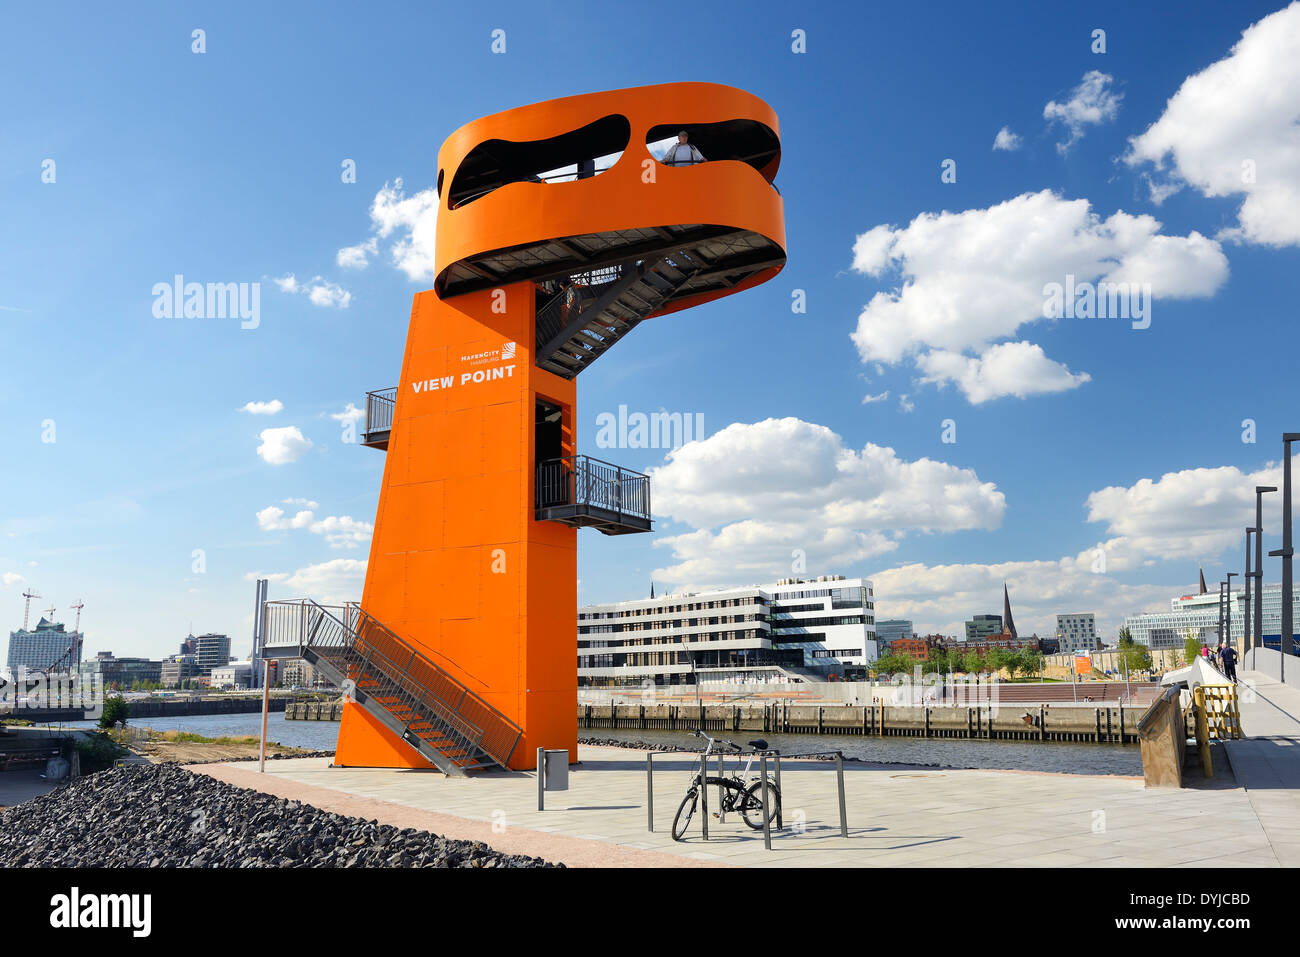 Aussichtsturm View Point suis Baakenhafen dans der Hafencity von Hamburg, Deutschland, Europa Banque D'Images